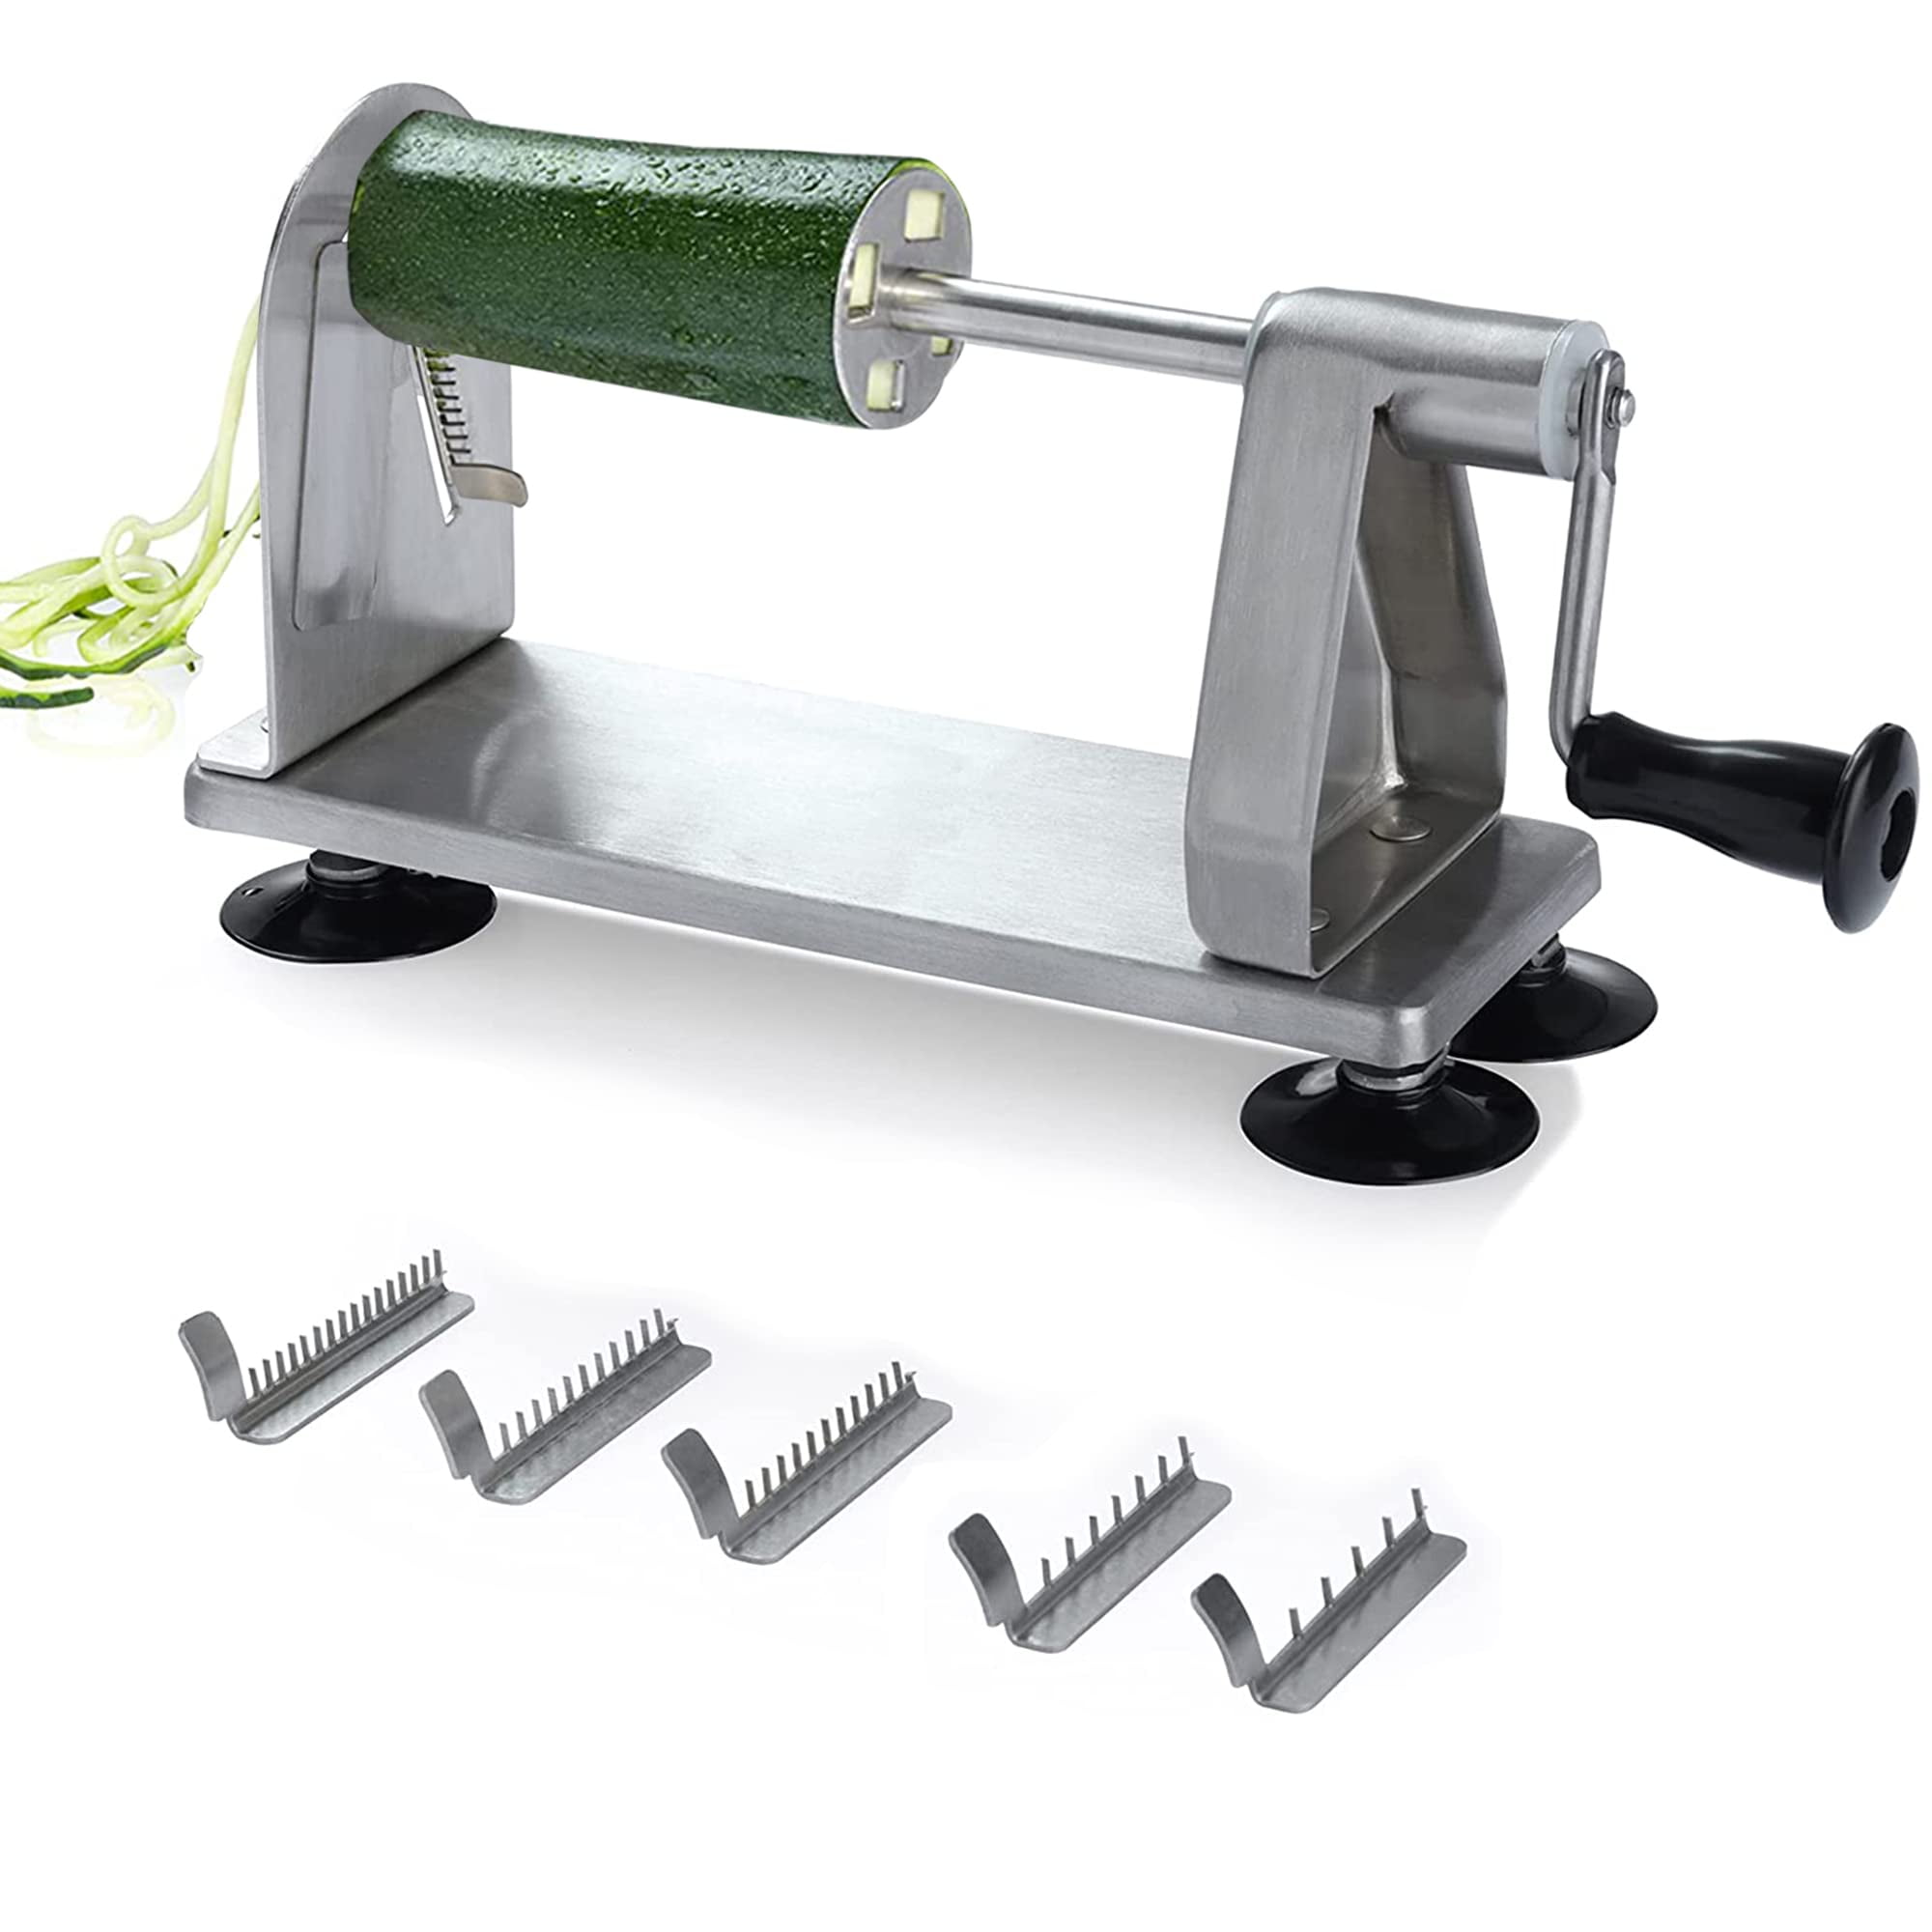 Handheld Vegetables Zoodle Slicer Spiral Manual Spiralizer Cutter Make —  AllTopBargains